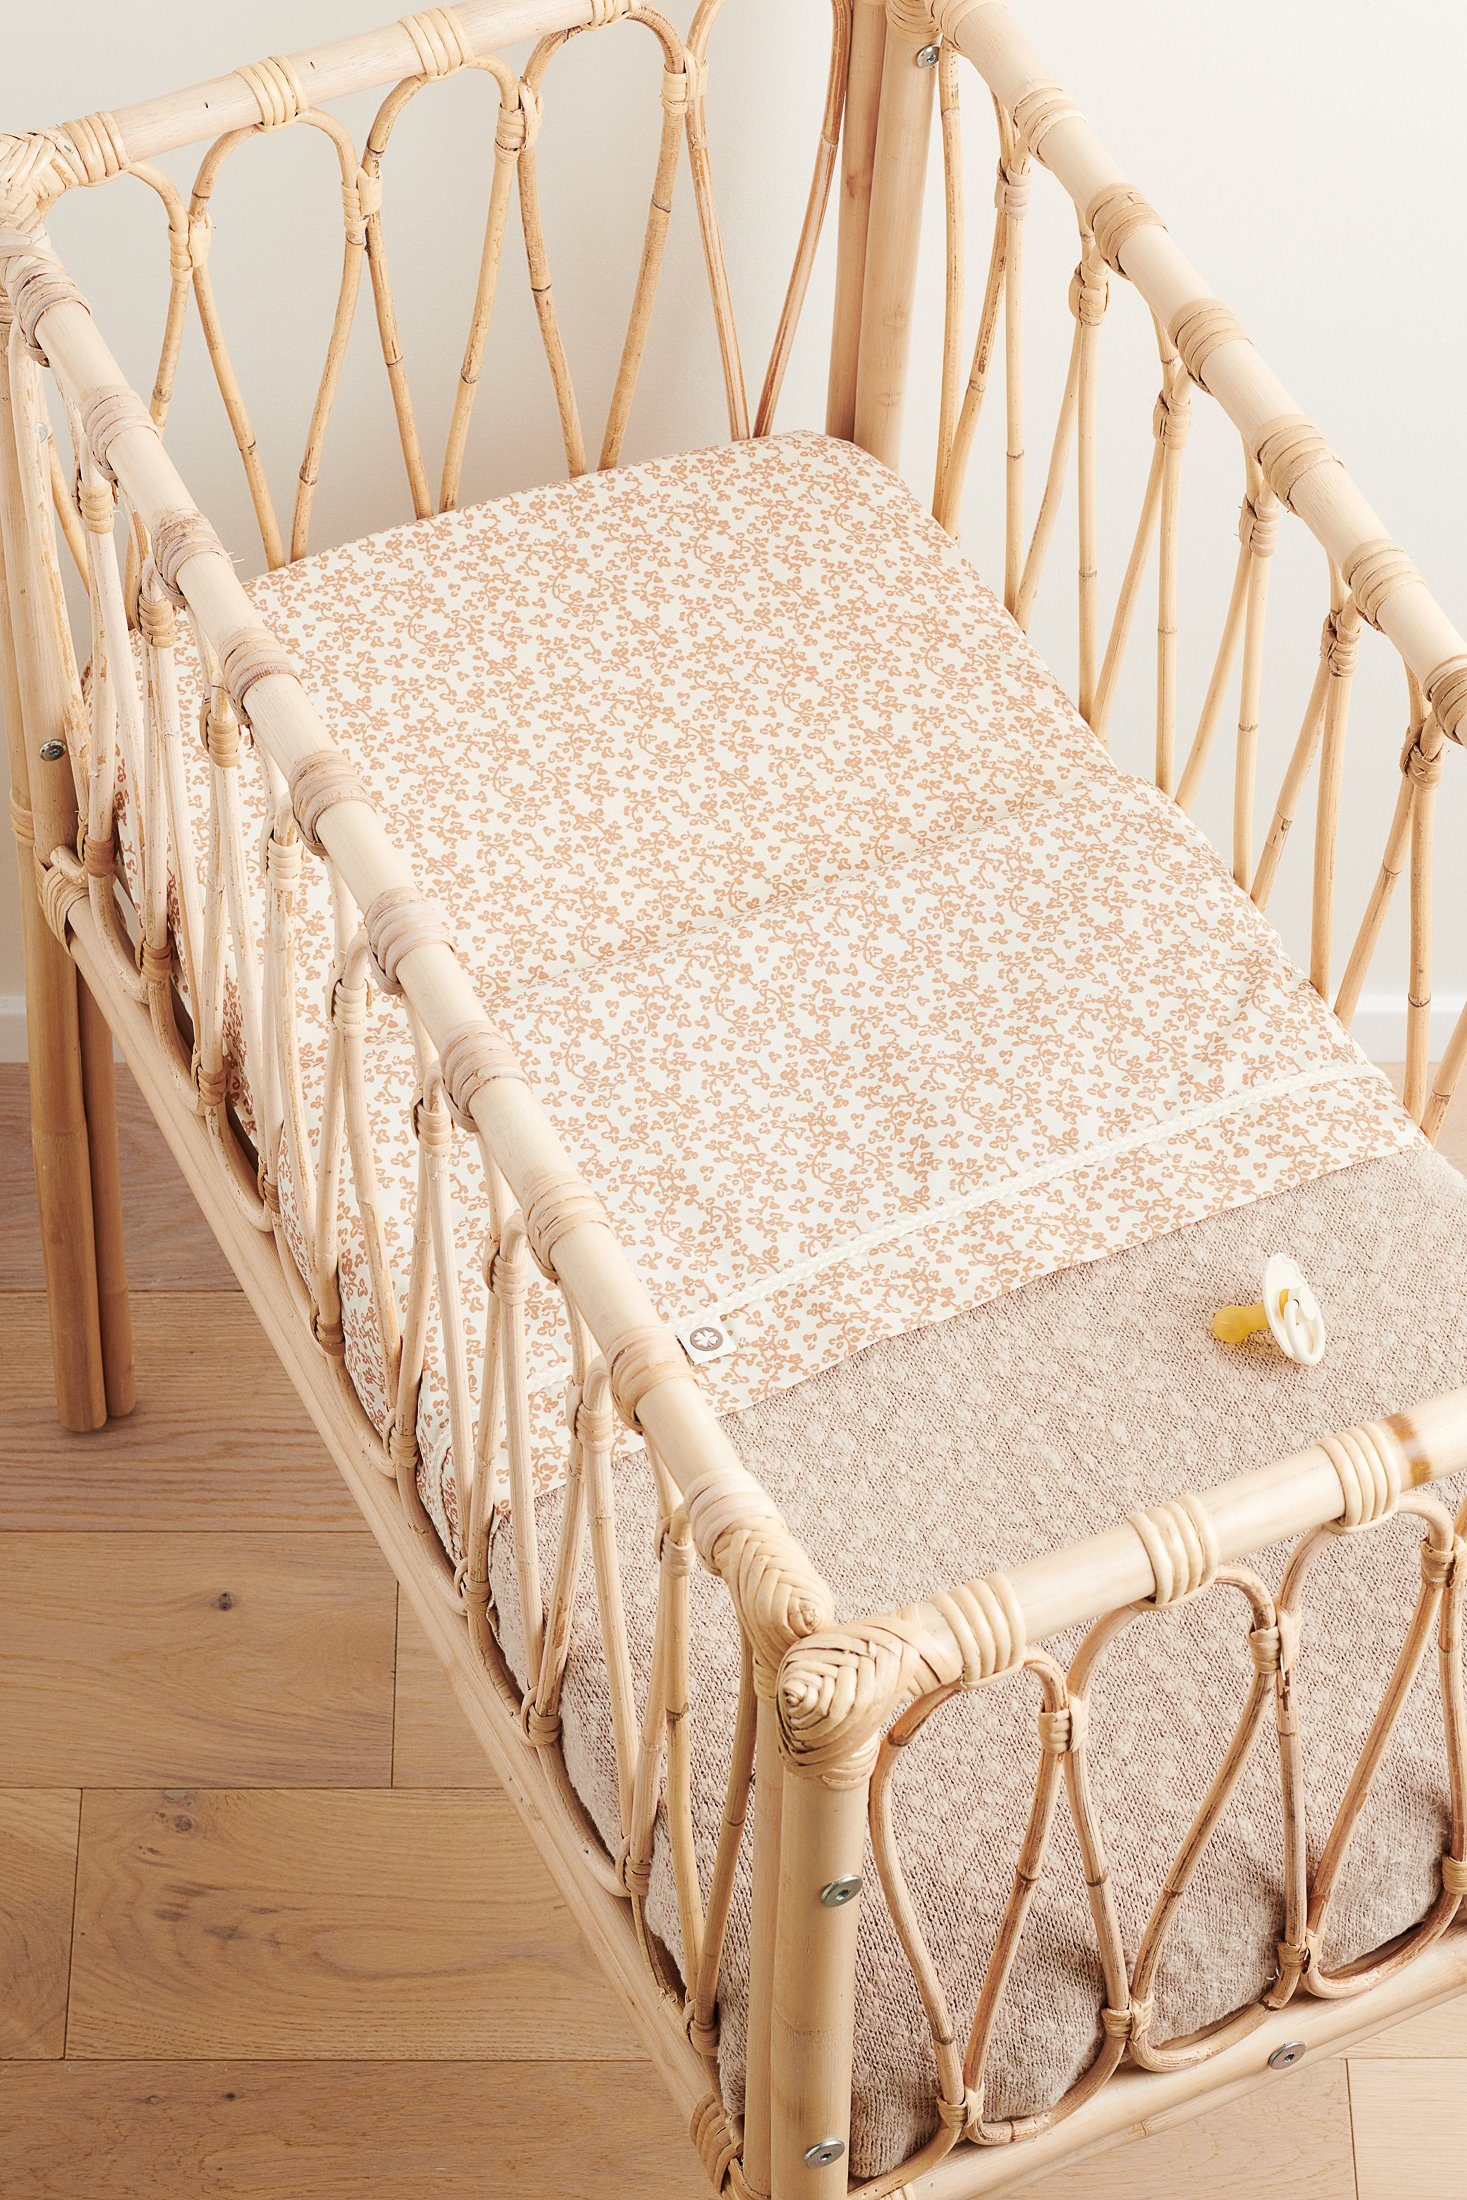 Babydecke Noppies Decke für die Wiege Melange knit 75x100 cm, Noppies Oxford Tan